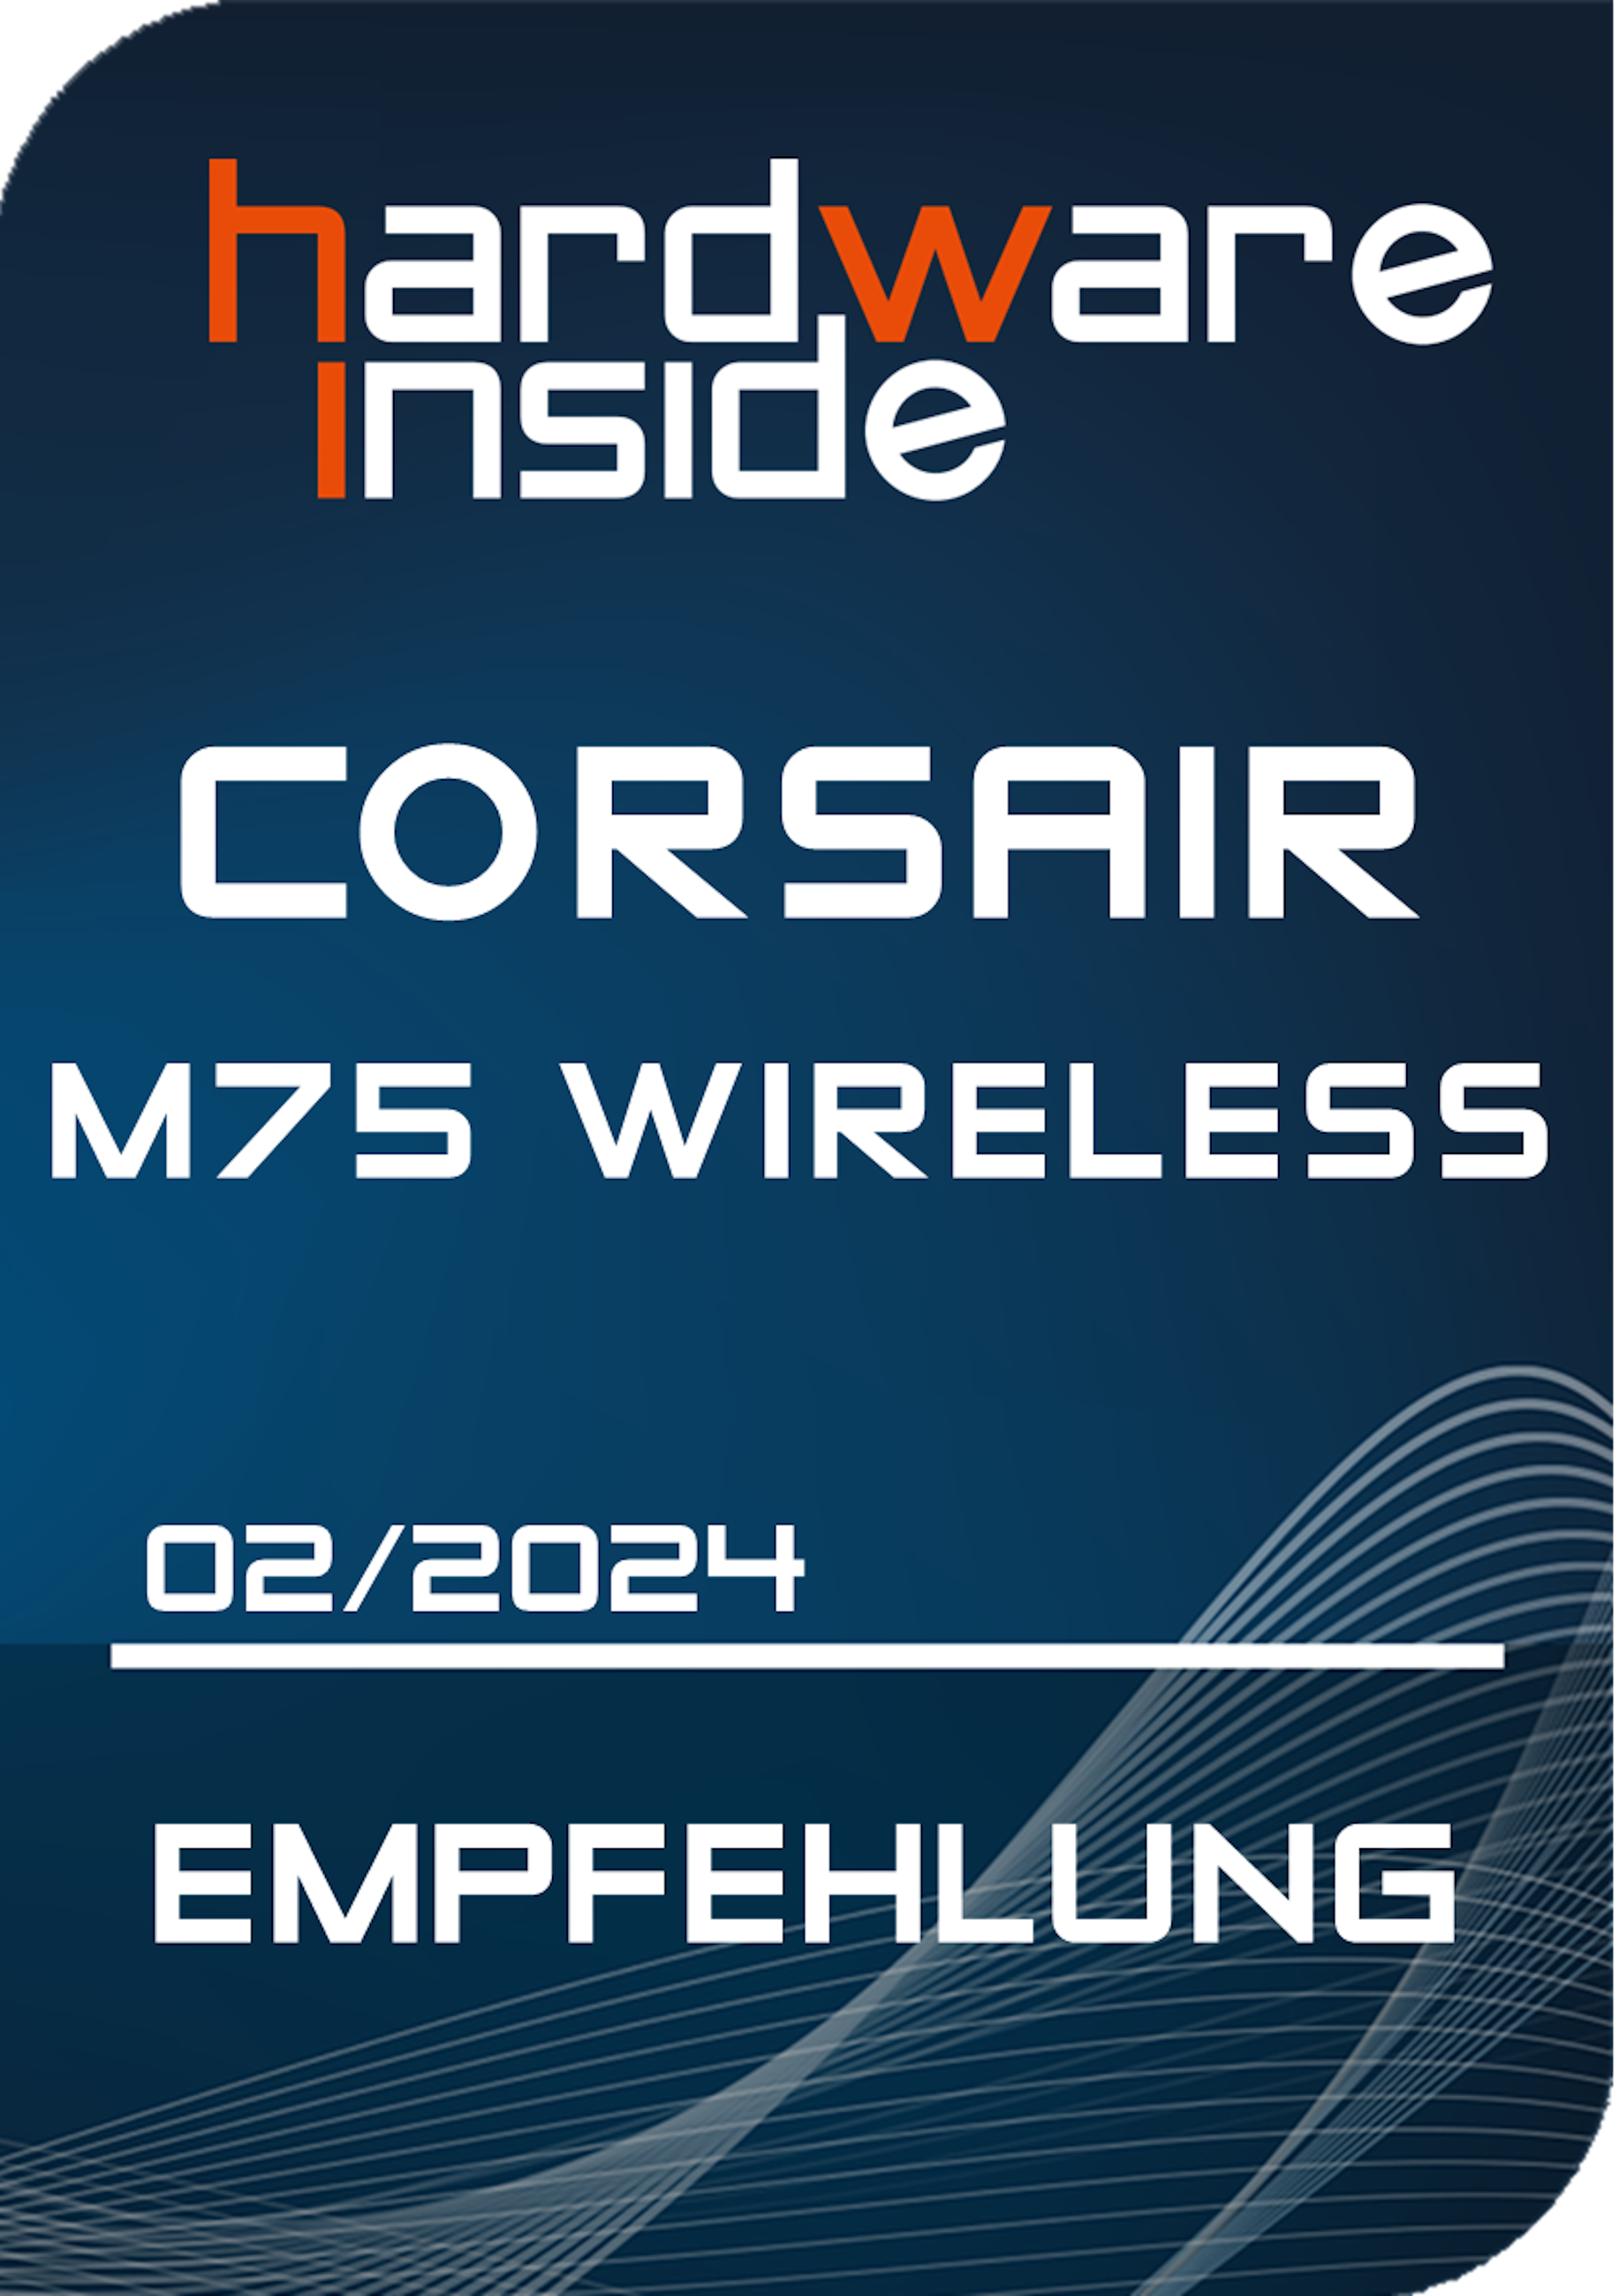 CORSAIR-M75-WIRELESS-HiRes-AWARD.PNG